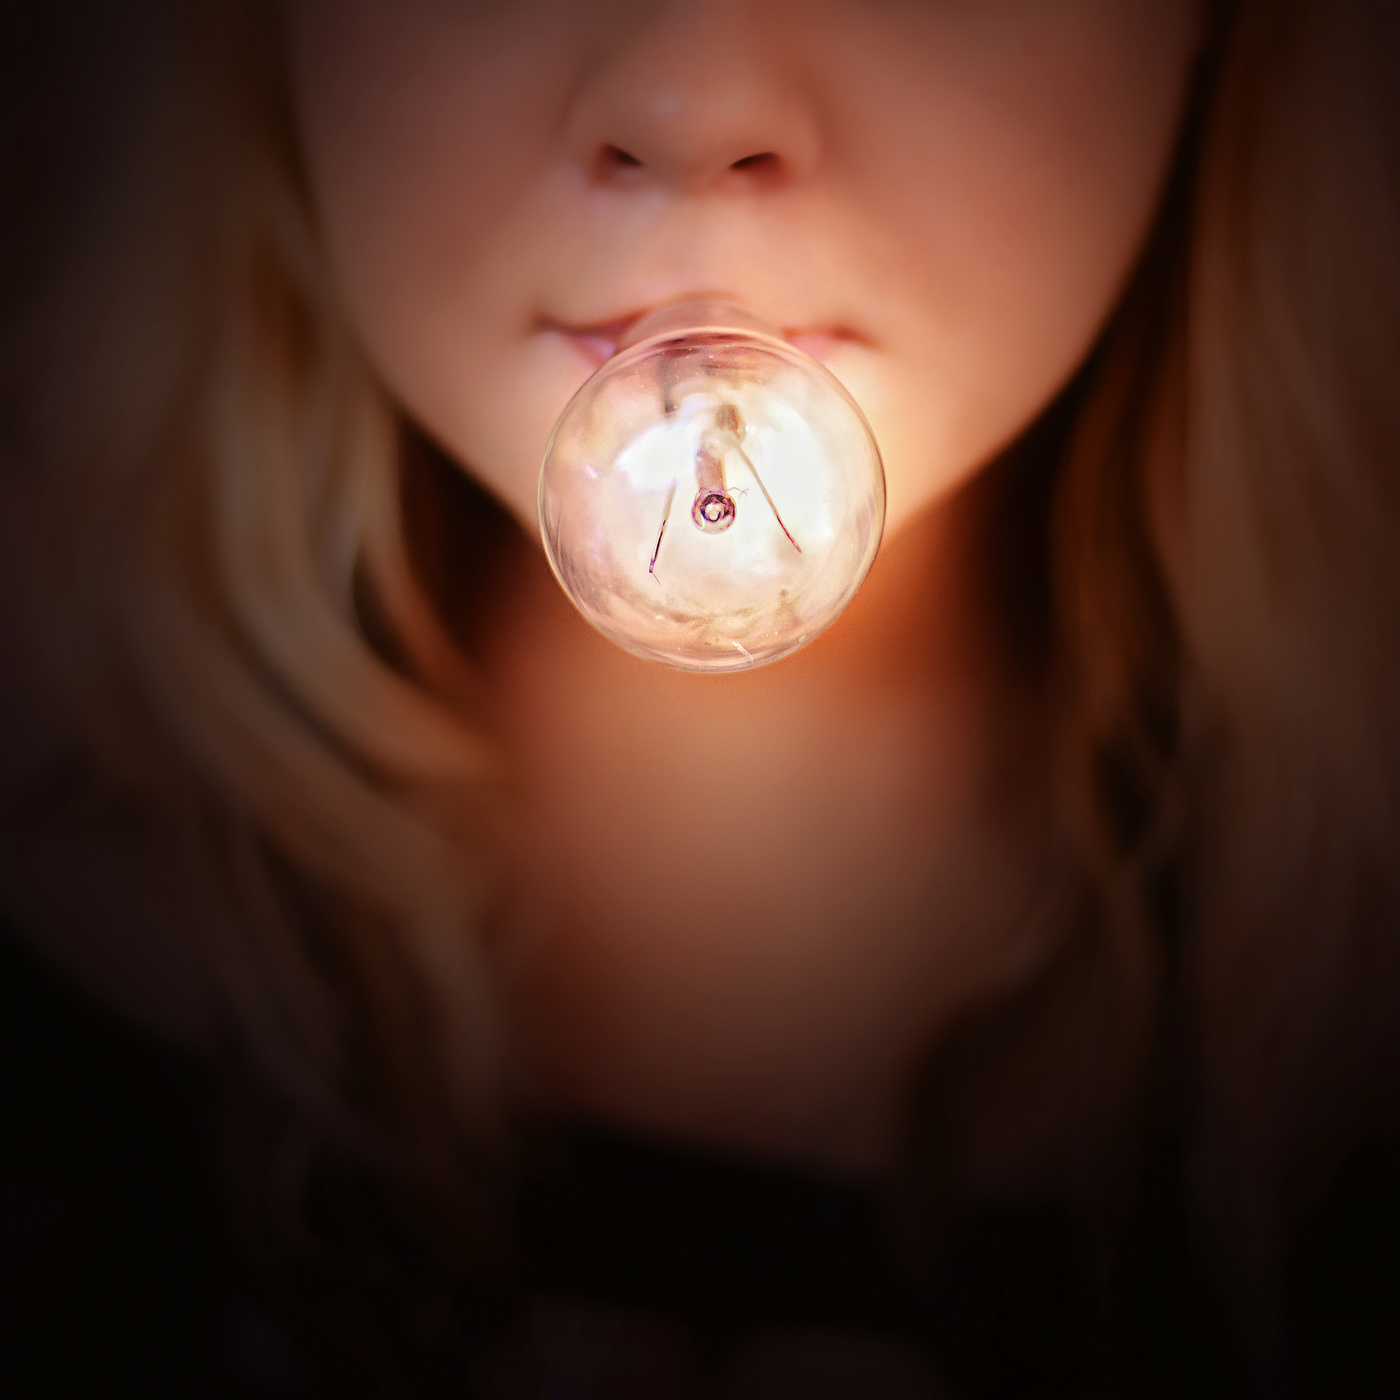 Отсутствие посторонних источников света прозрачный. Фотосессия с лампочками. Девушка с лампочкой. Лампочка во рту девушки. Лампа для фотосессии.